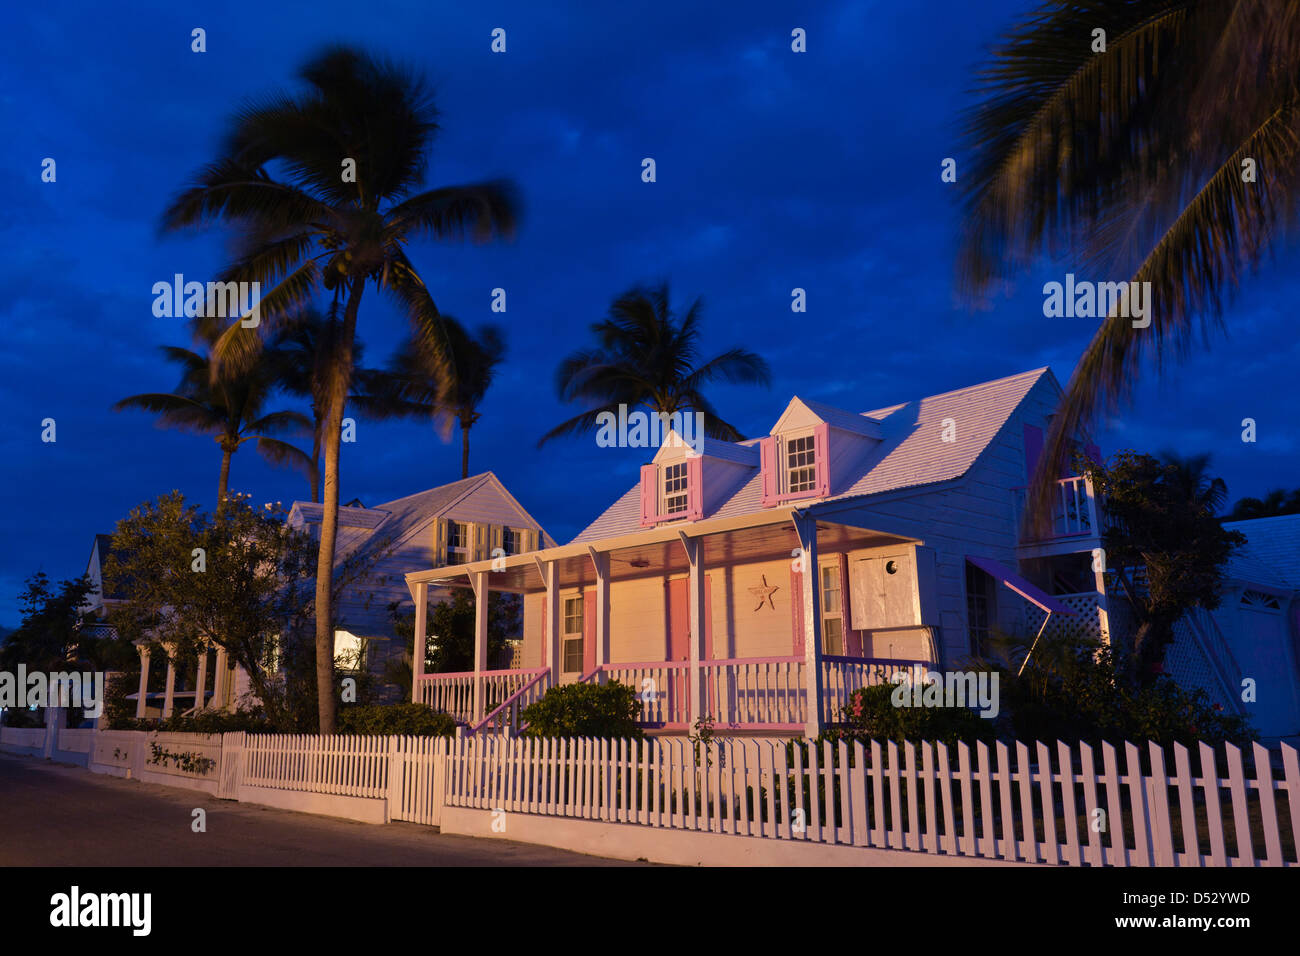 Bahamas, Eleuthera Island, Harbor Island, Dunmore Town, casa de la época colonial a lo largo de la calle de la bahía, el anochecer Foto de stock